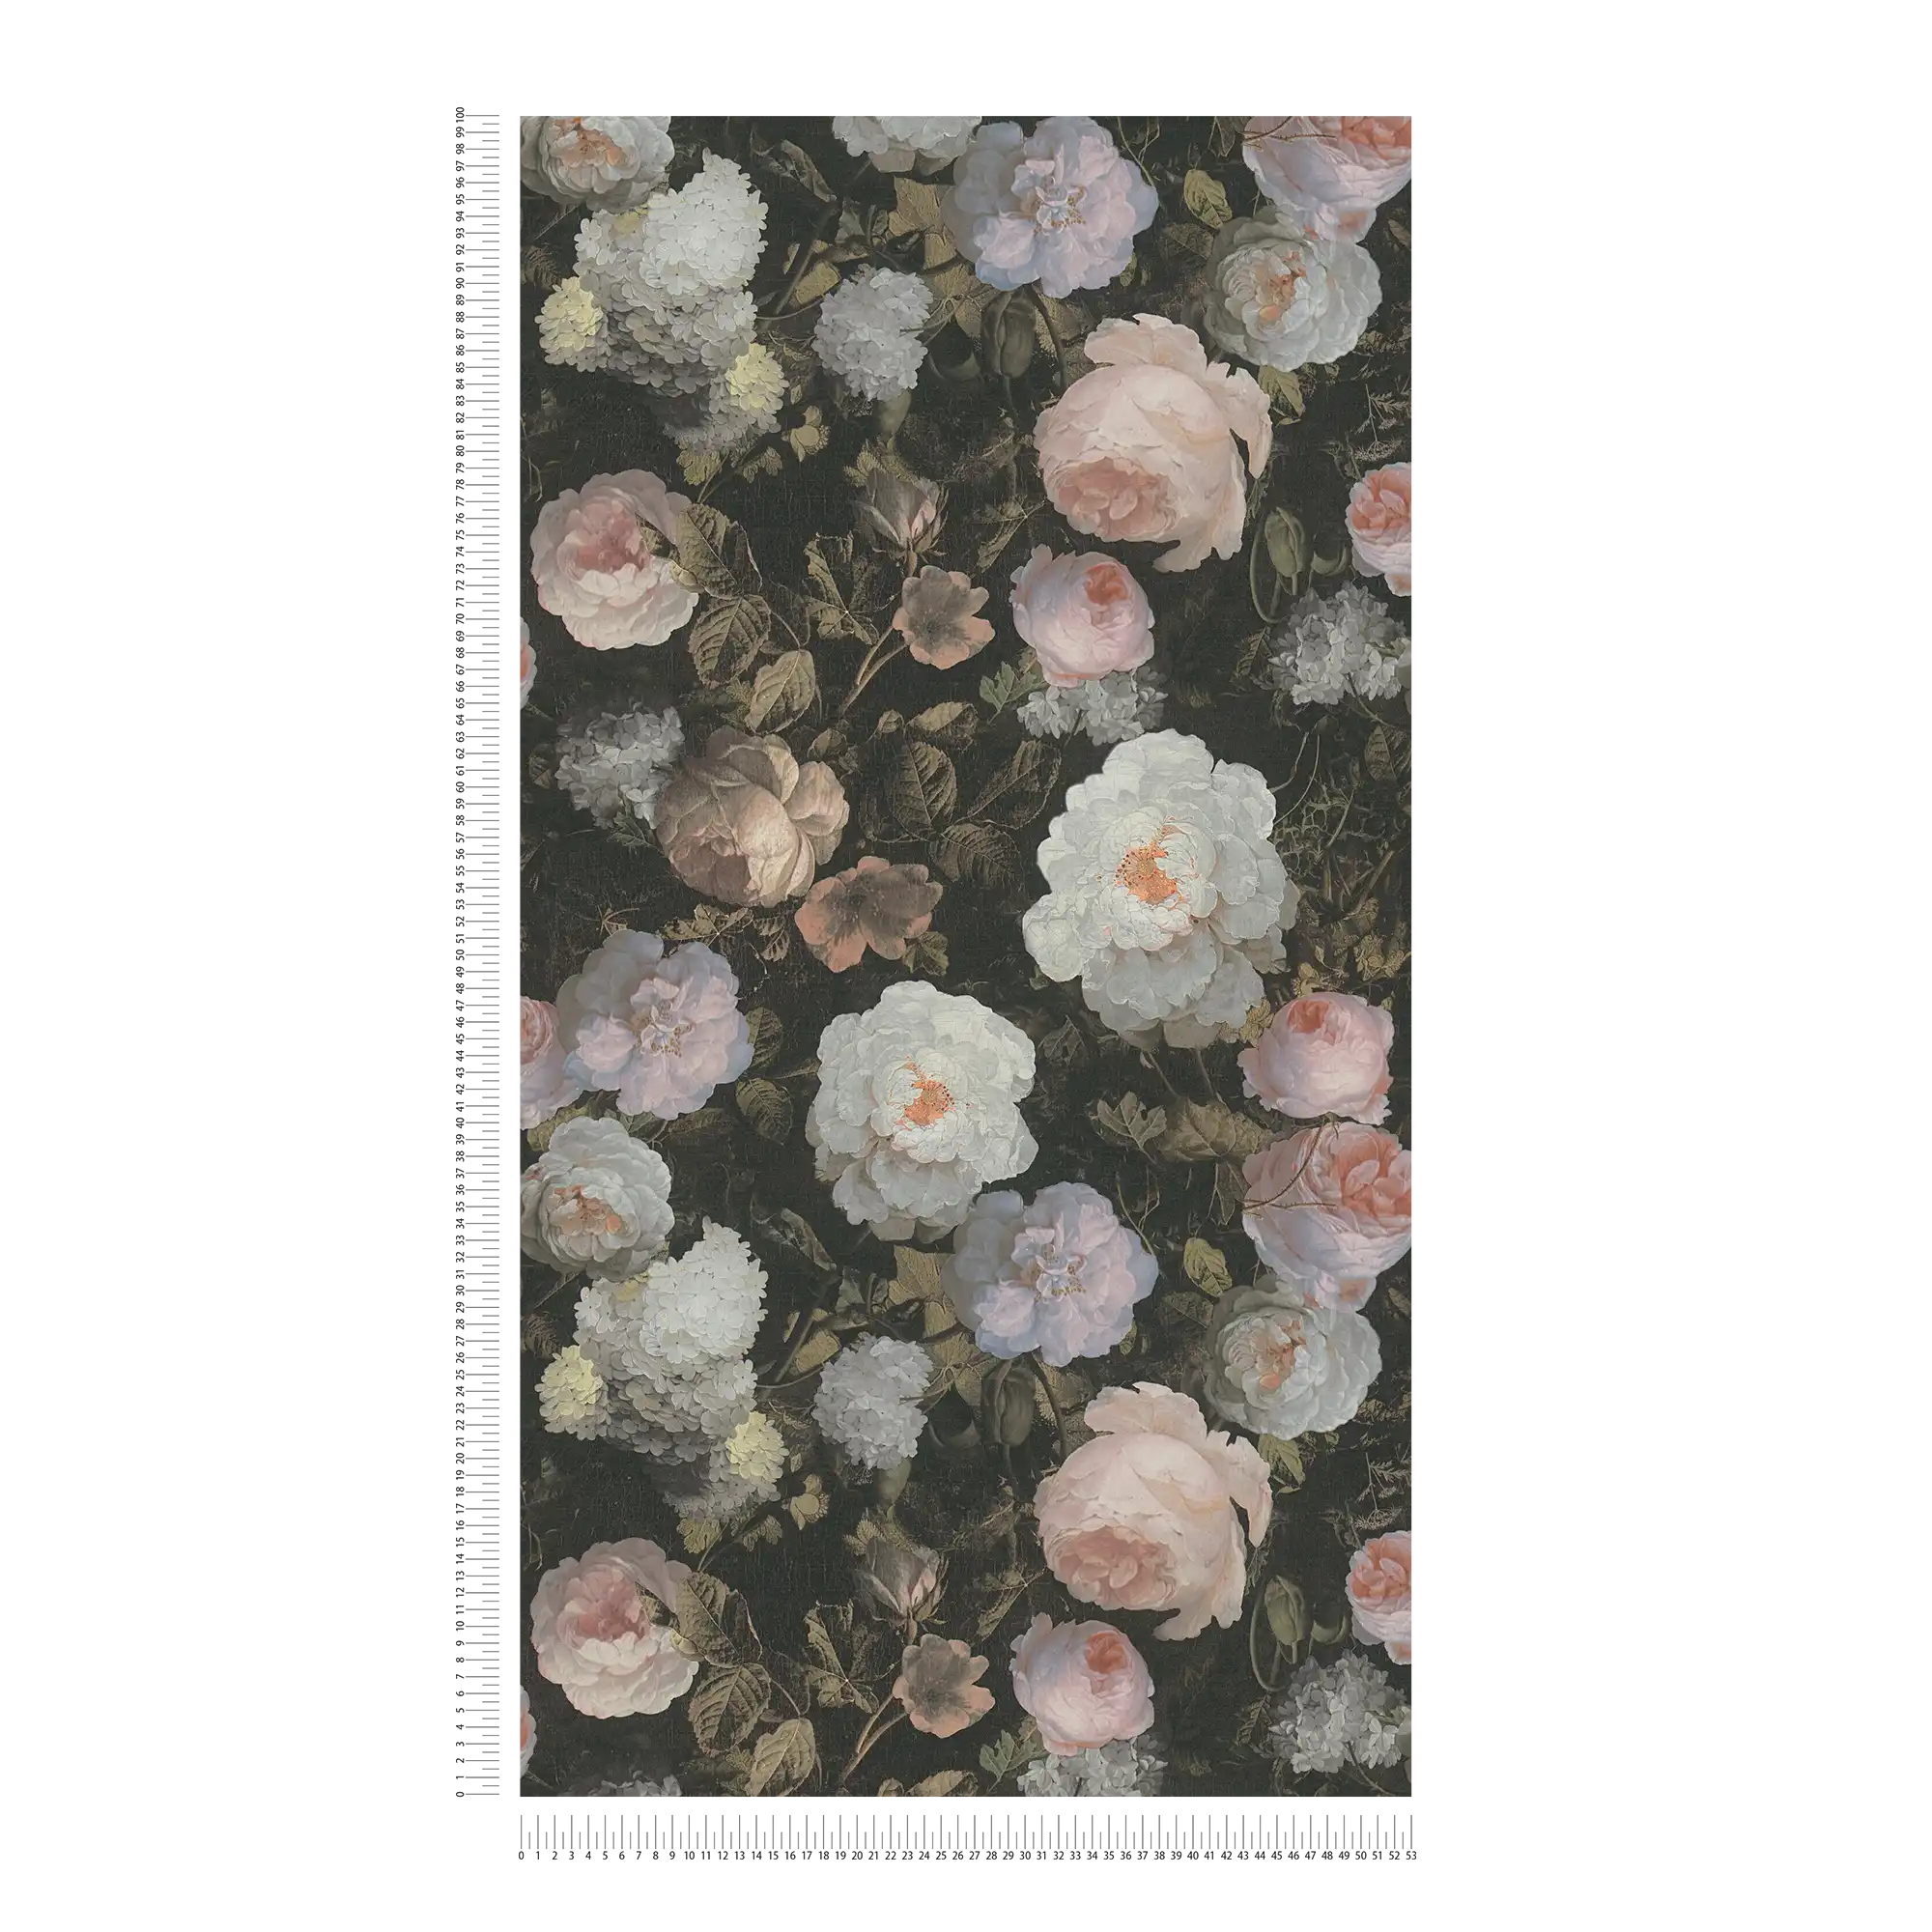             Rosen-Tapete mit Blütenmuster – Rosa, Grün, Weiß
        